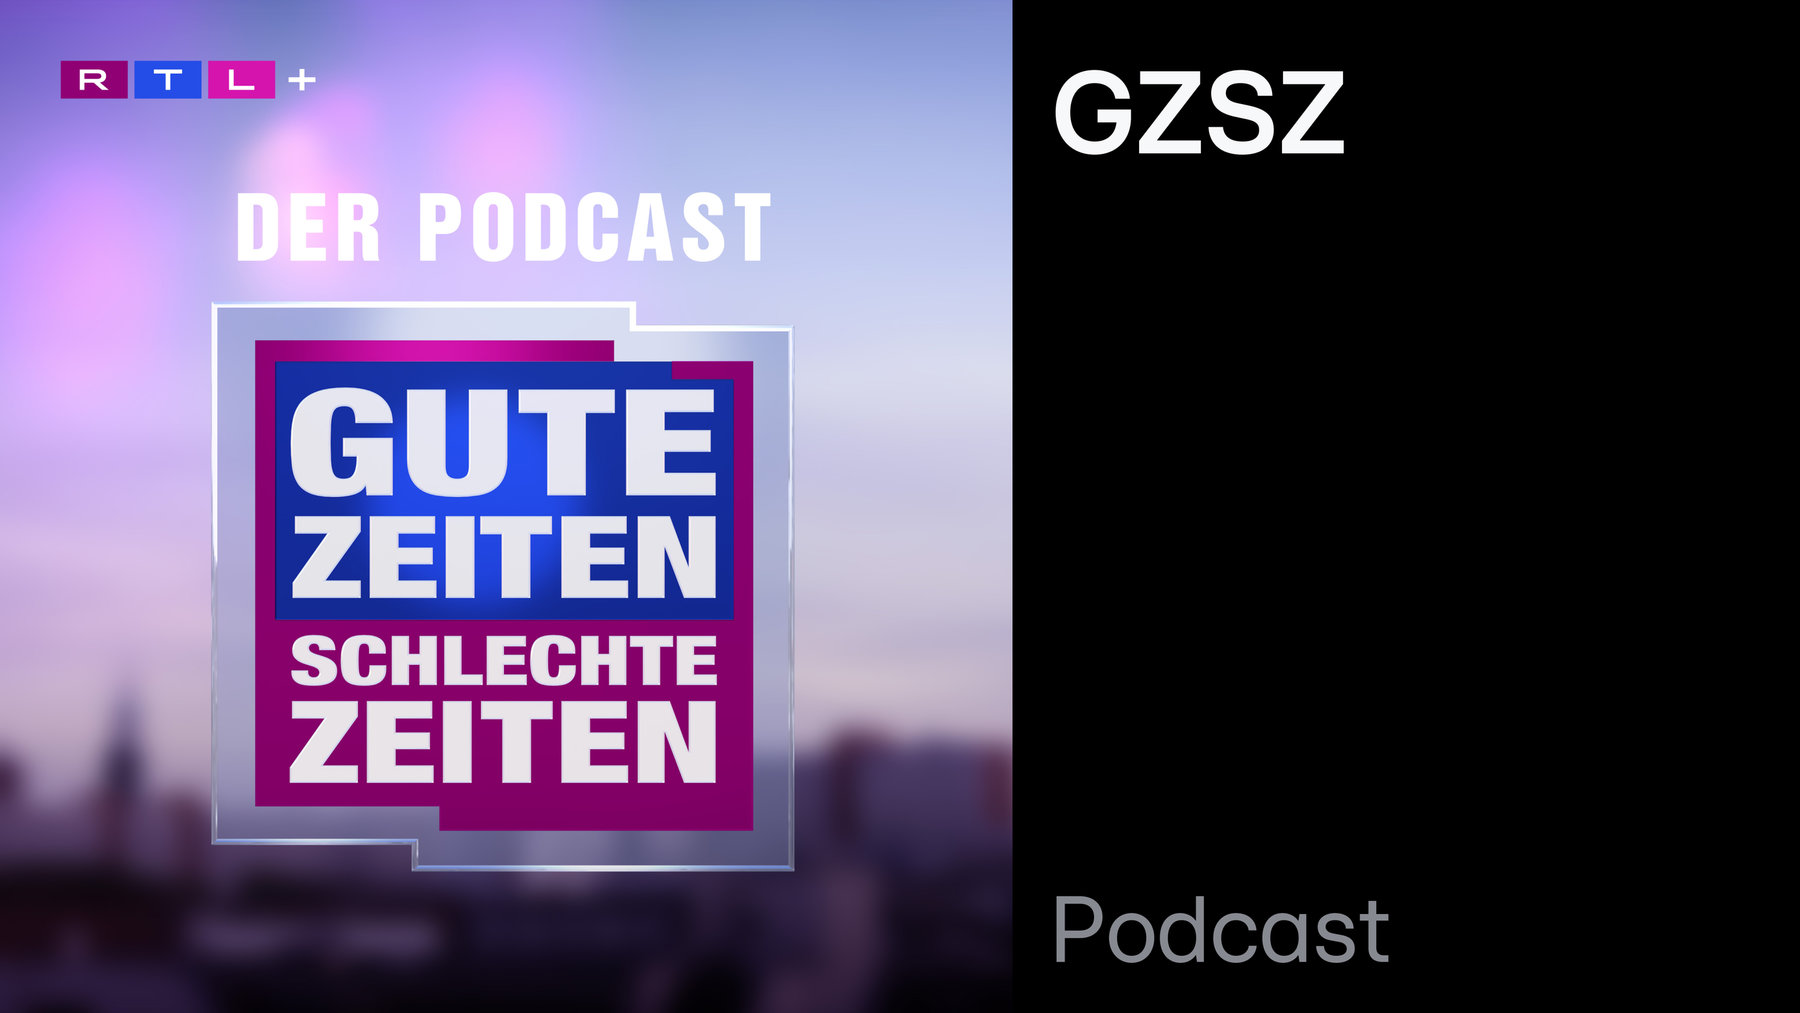 GZSZ - Der offizielle Podcast